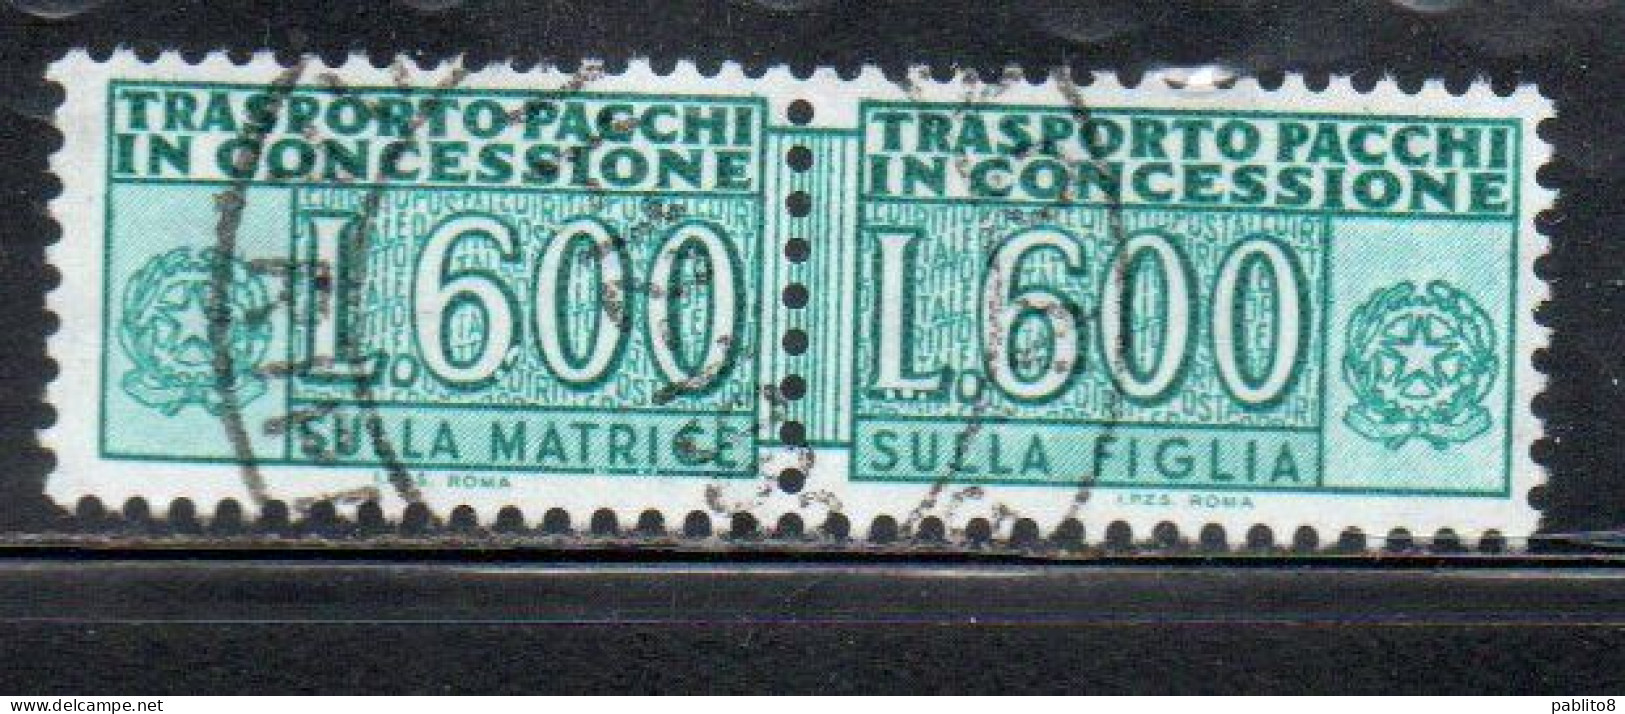 ITALIA REPUBBLICA ITALY REPUBLIC 1955 1981 PACCHI IN CONCESSIONE PARCEL POST STELLE STARS 1979 LIRE 600 USATO USED OBLIT - Consigned Parcels